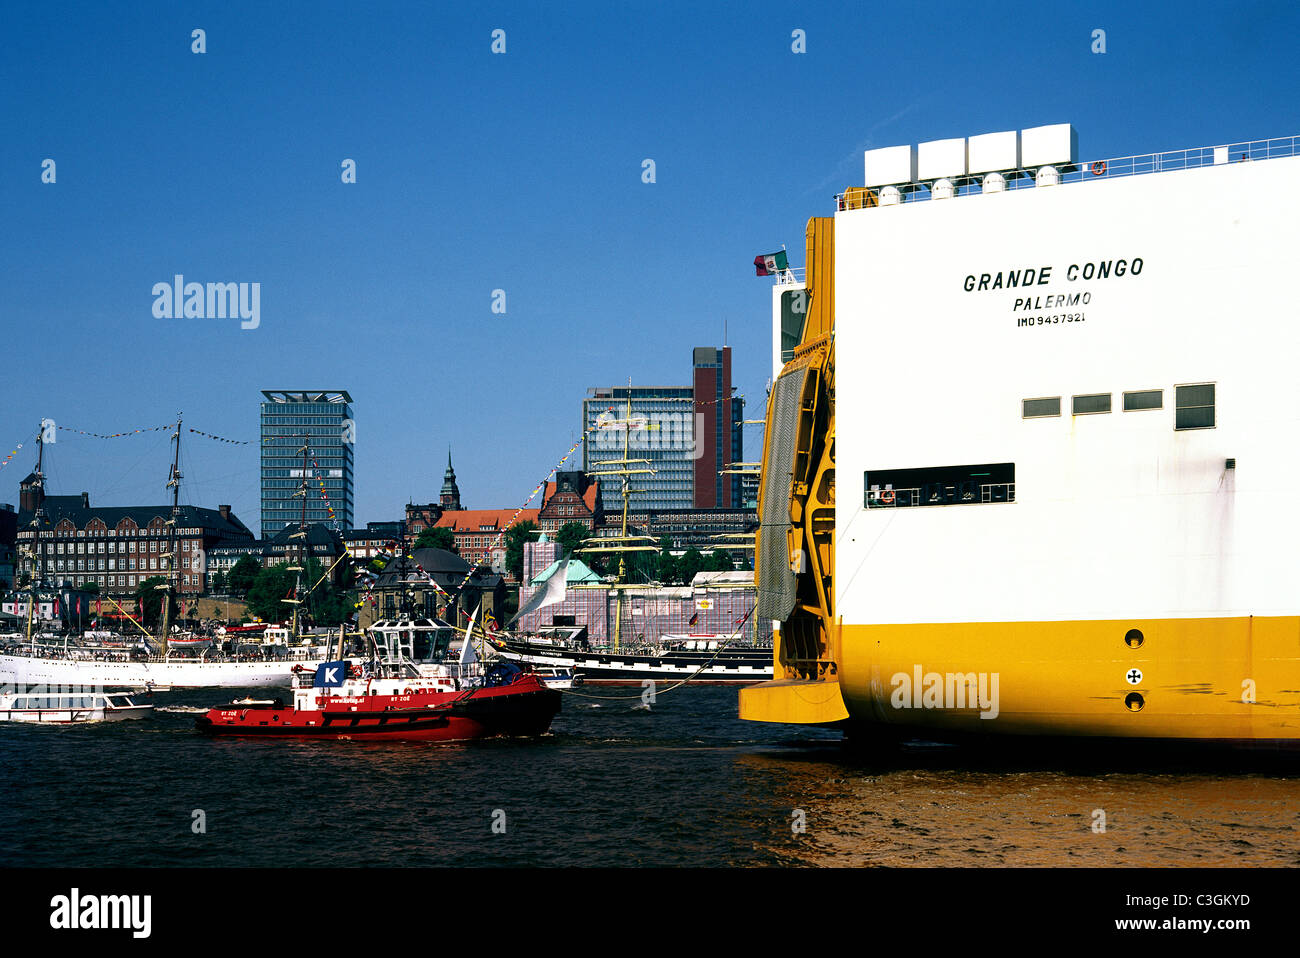 Grimaldi's veicolo transporter Grande Congo passa Landungsbrücken all'arrivo nel porto di Amburgo. Foto Stock